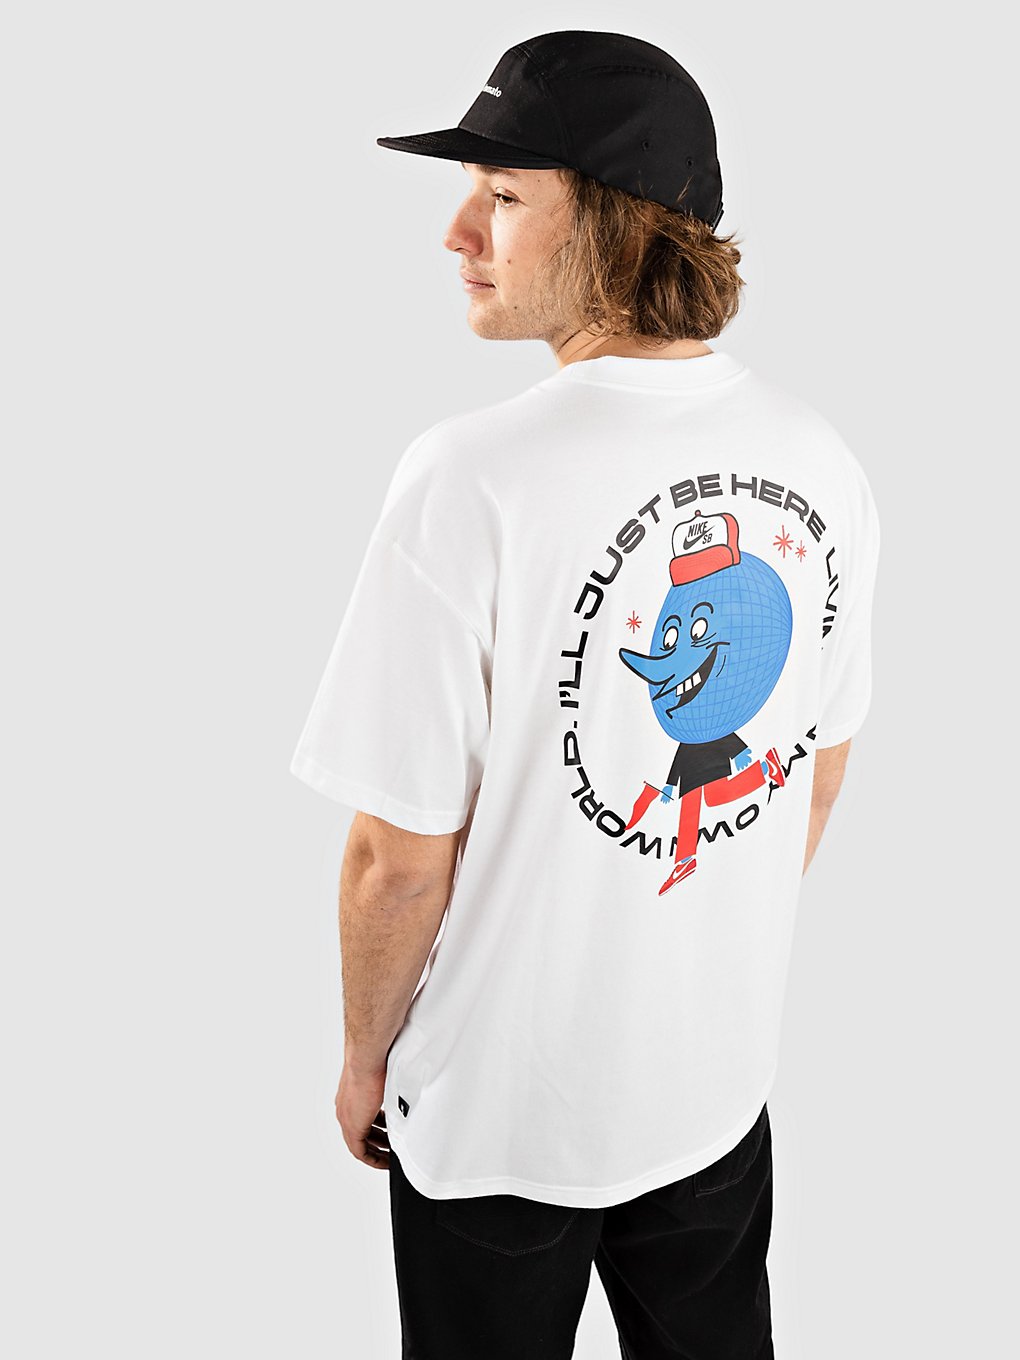 Nike SB Globe Guy T-Shirt white kaufen